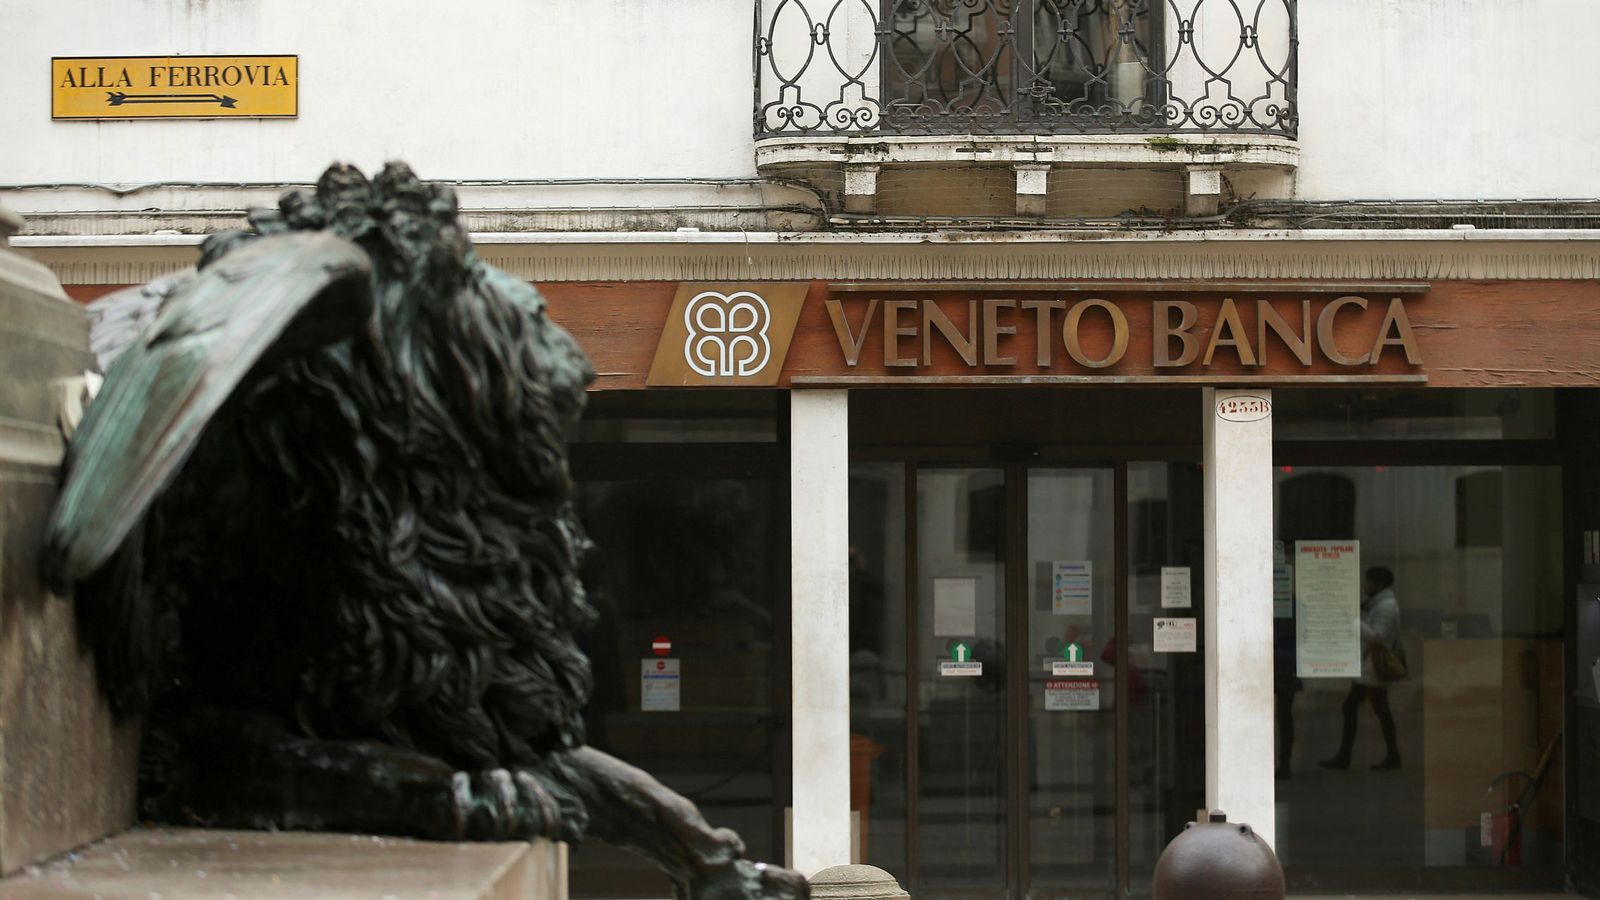 Foto: Oficina de Veneto Banca en Venecia. (Reuters)